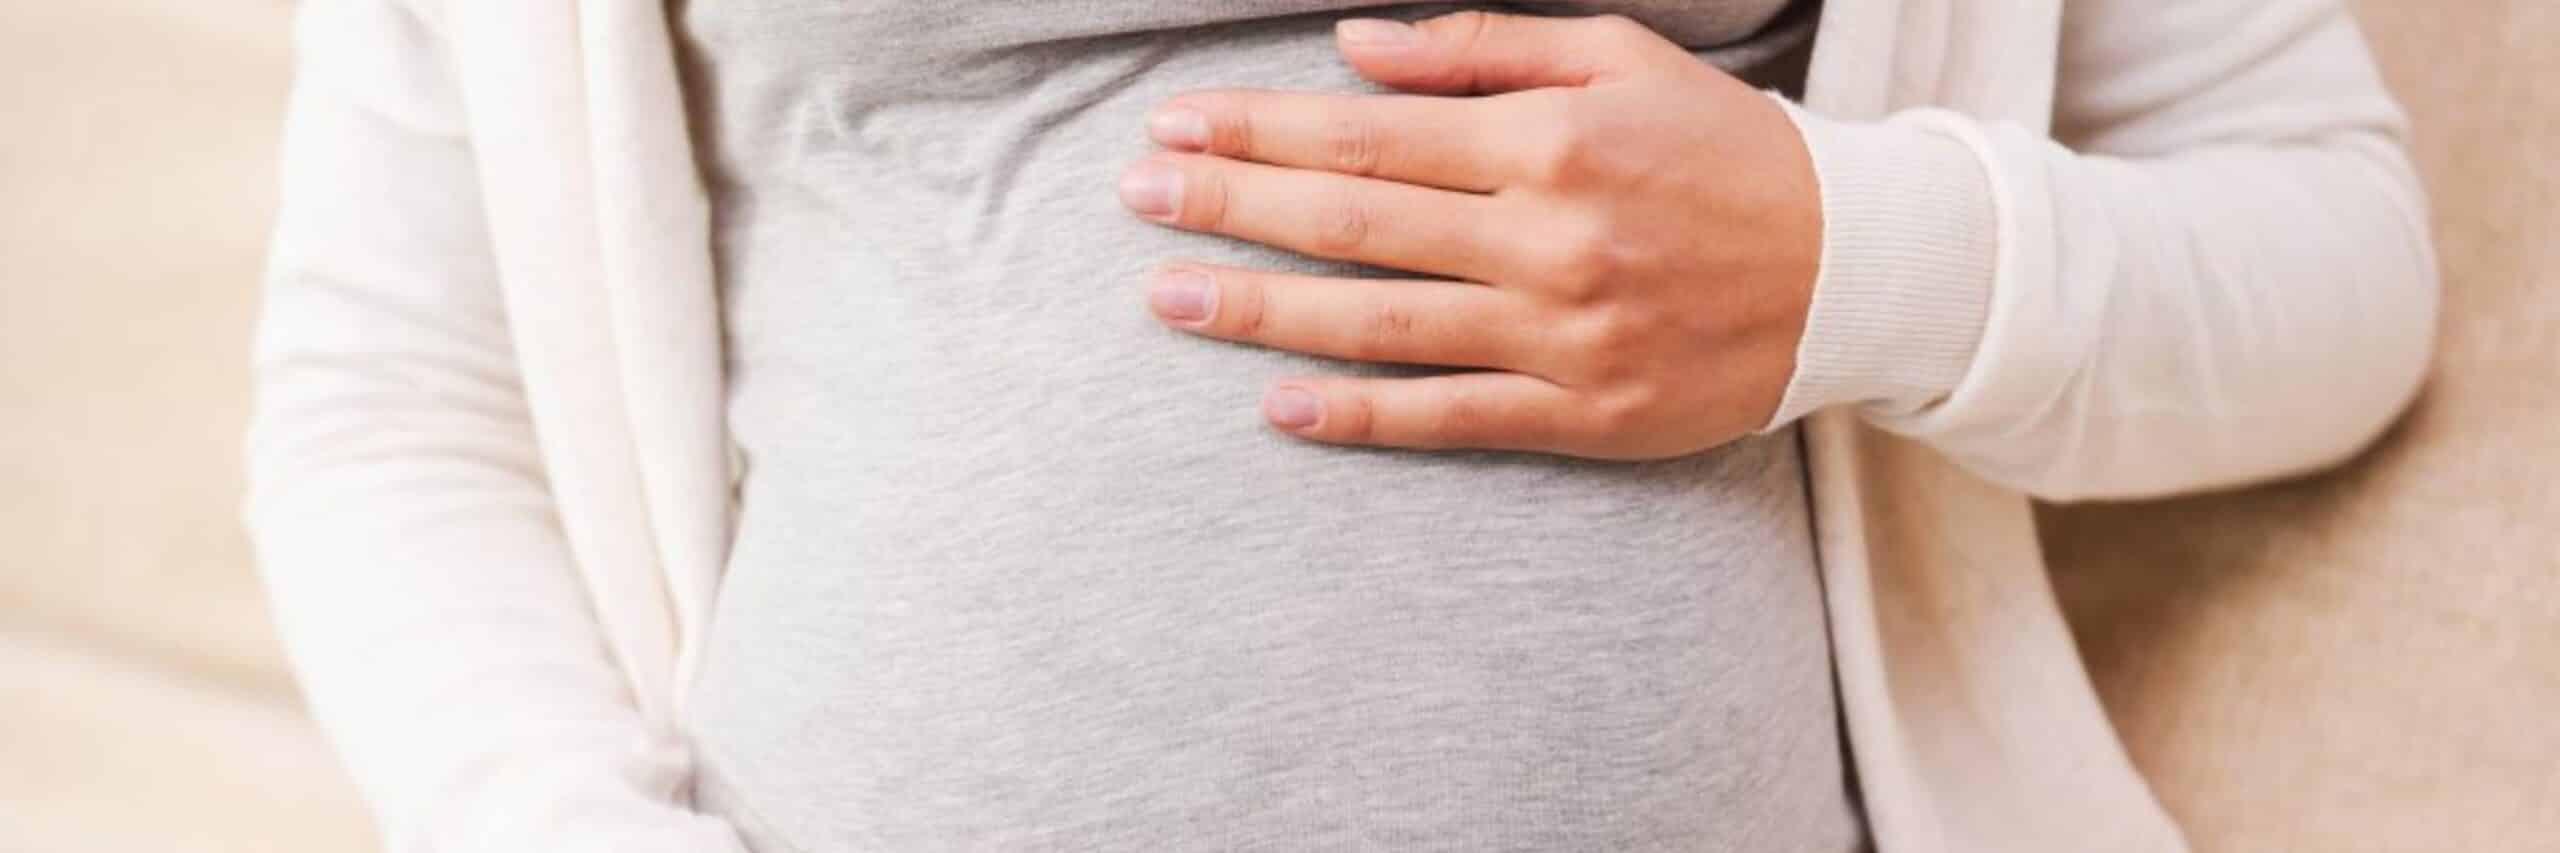 Hoe kan je striemen tijdens je zwangerschap voorkomen?